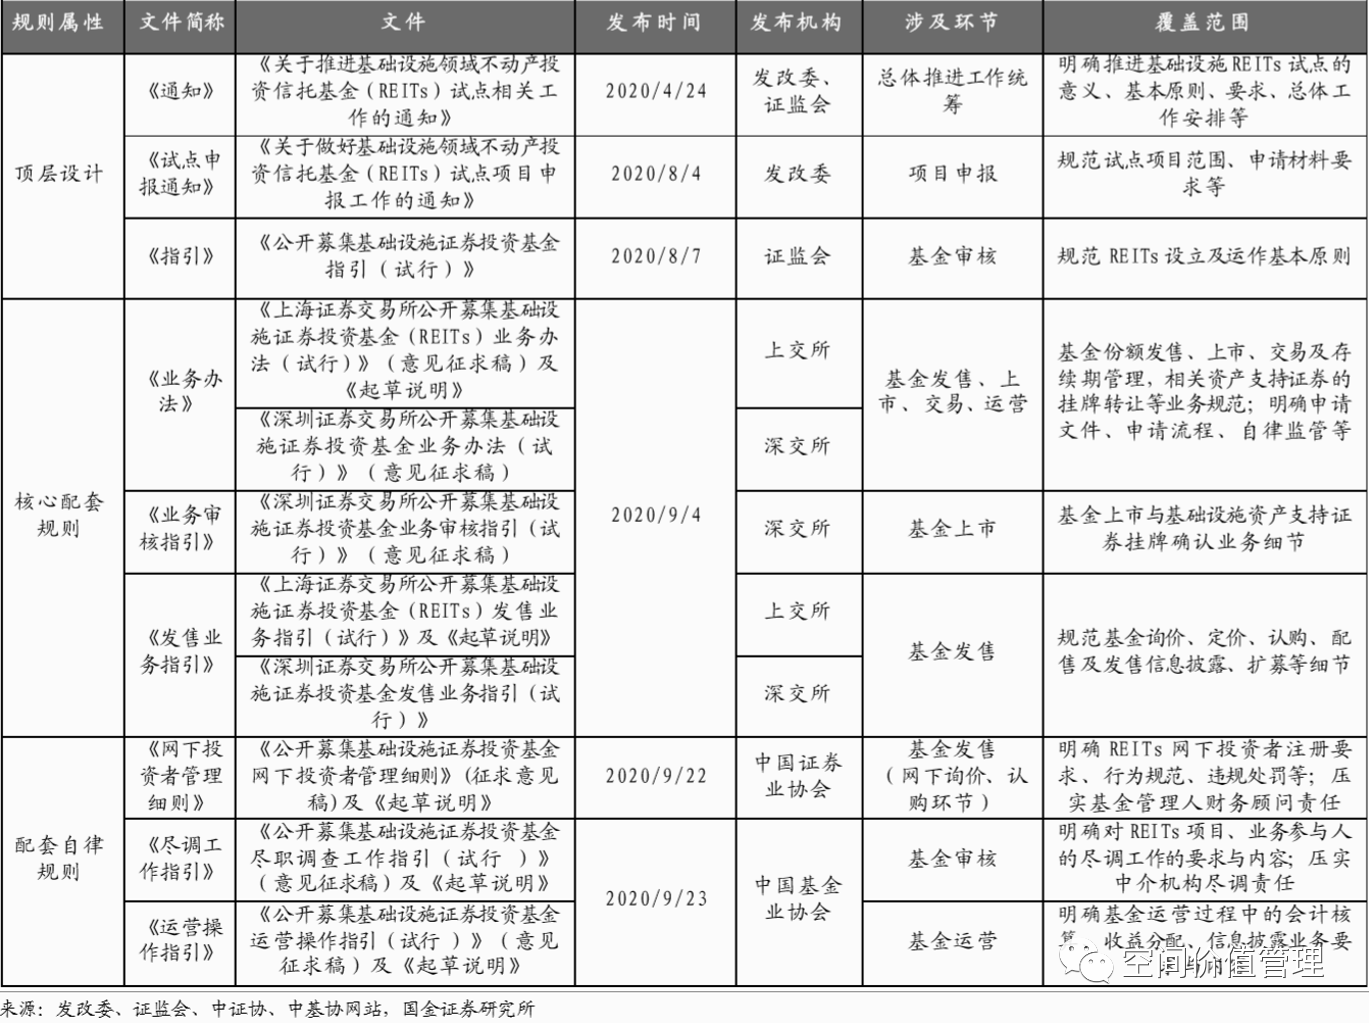 公募reits政策与三家已申报项目分析 首创 渤海和东湖高新 中国房屋管理研究院 Mdeditor